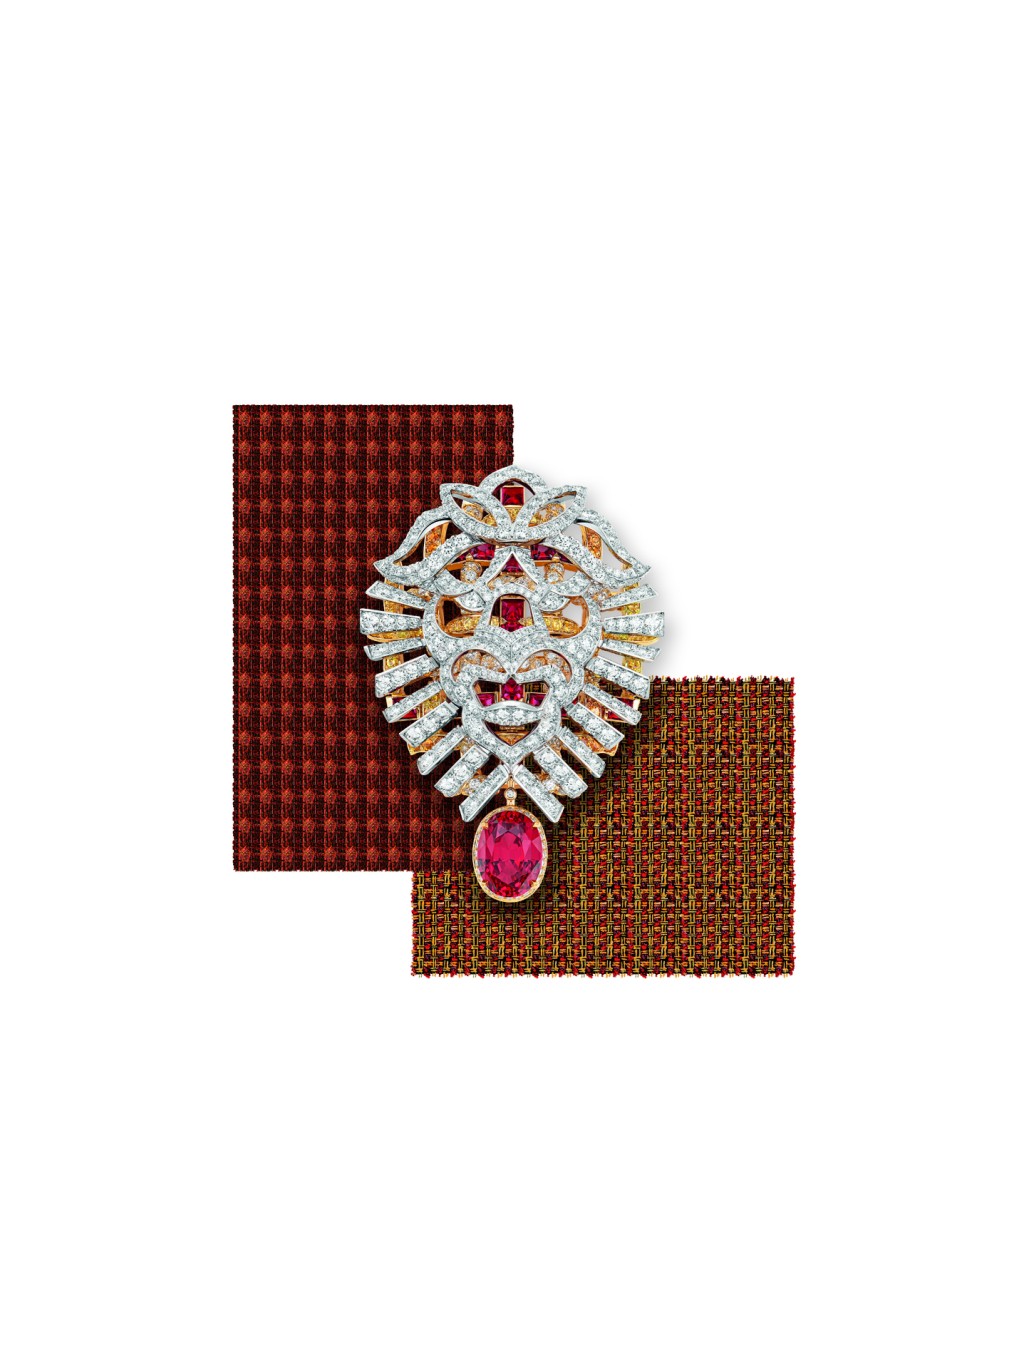 Tweed Lion白金及黃金鑽石胸針，鑲嵌紅寶石和錳鋁榴石，單顆紅色尖晶石重約9.13卡，獅首圖騰可拆下搭配在鏈節上。